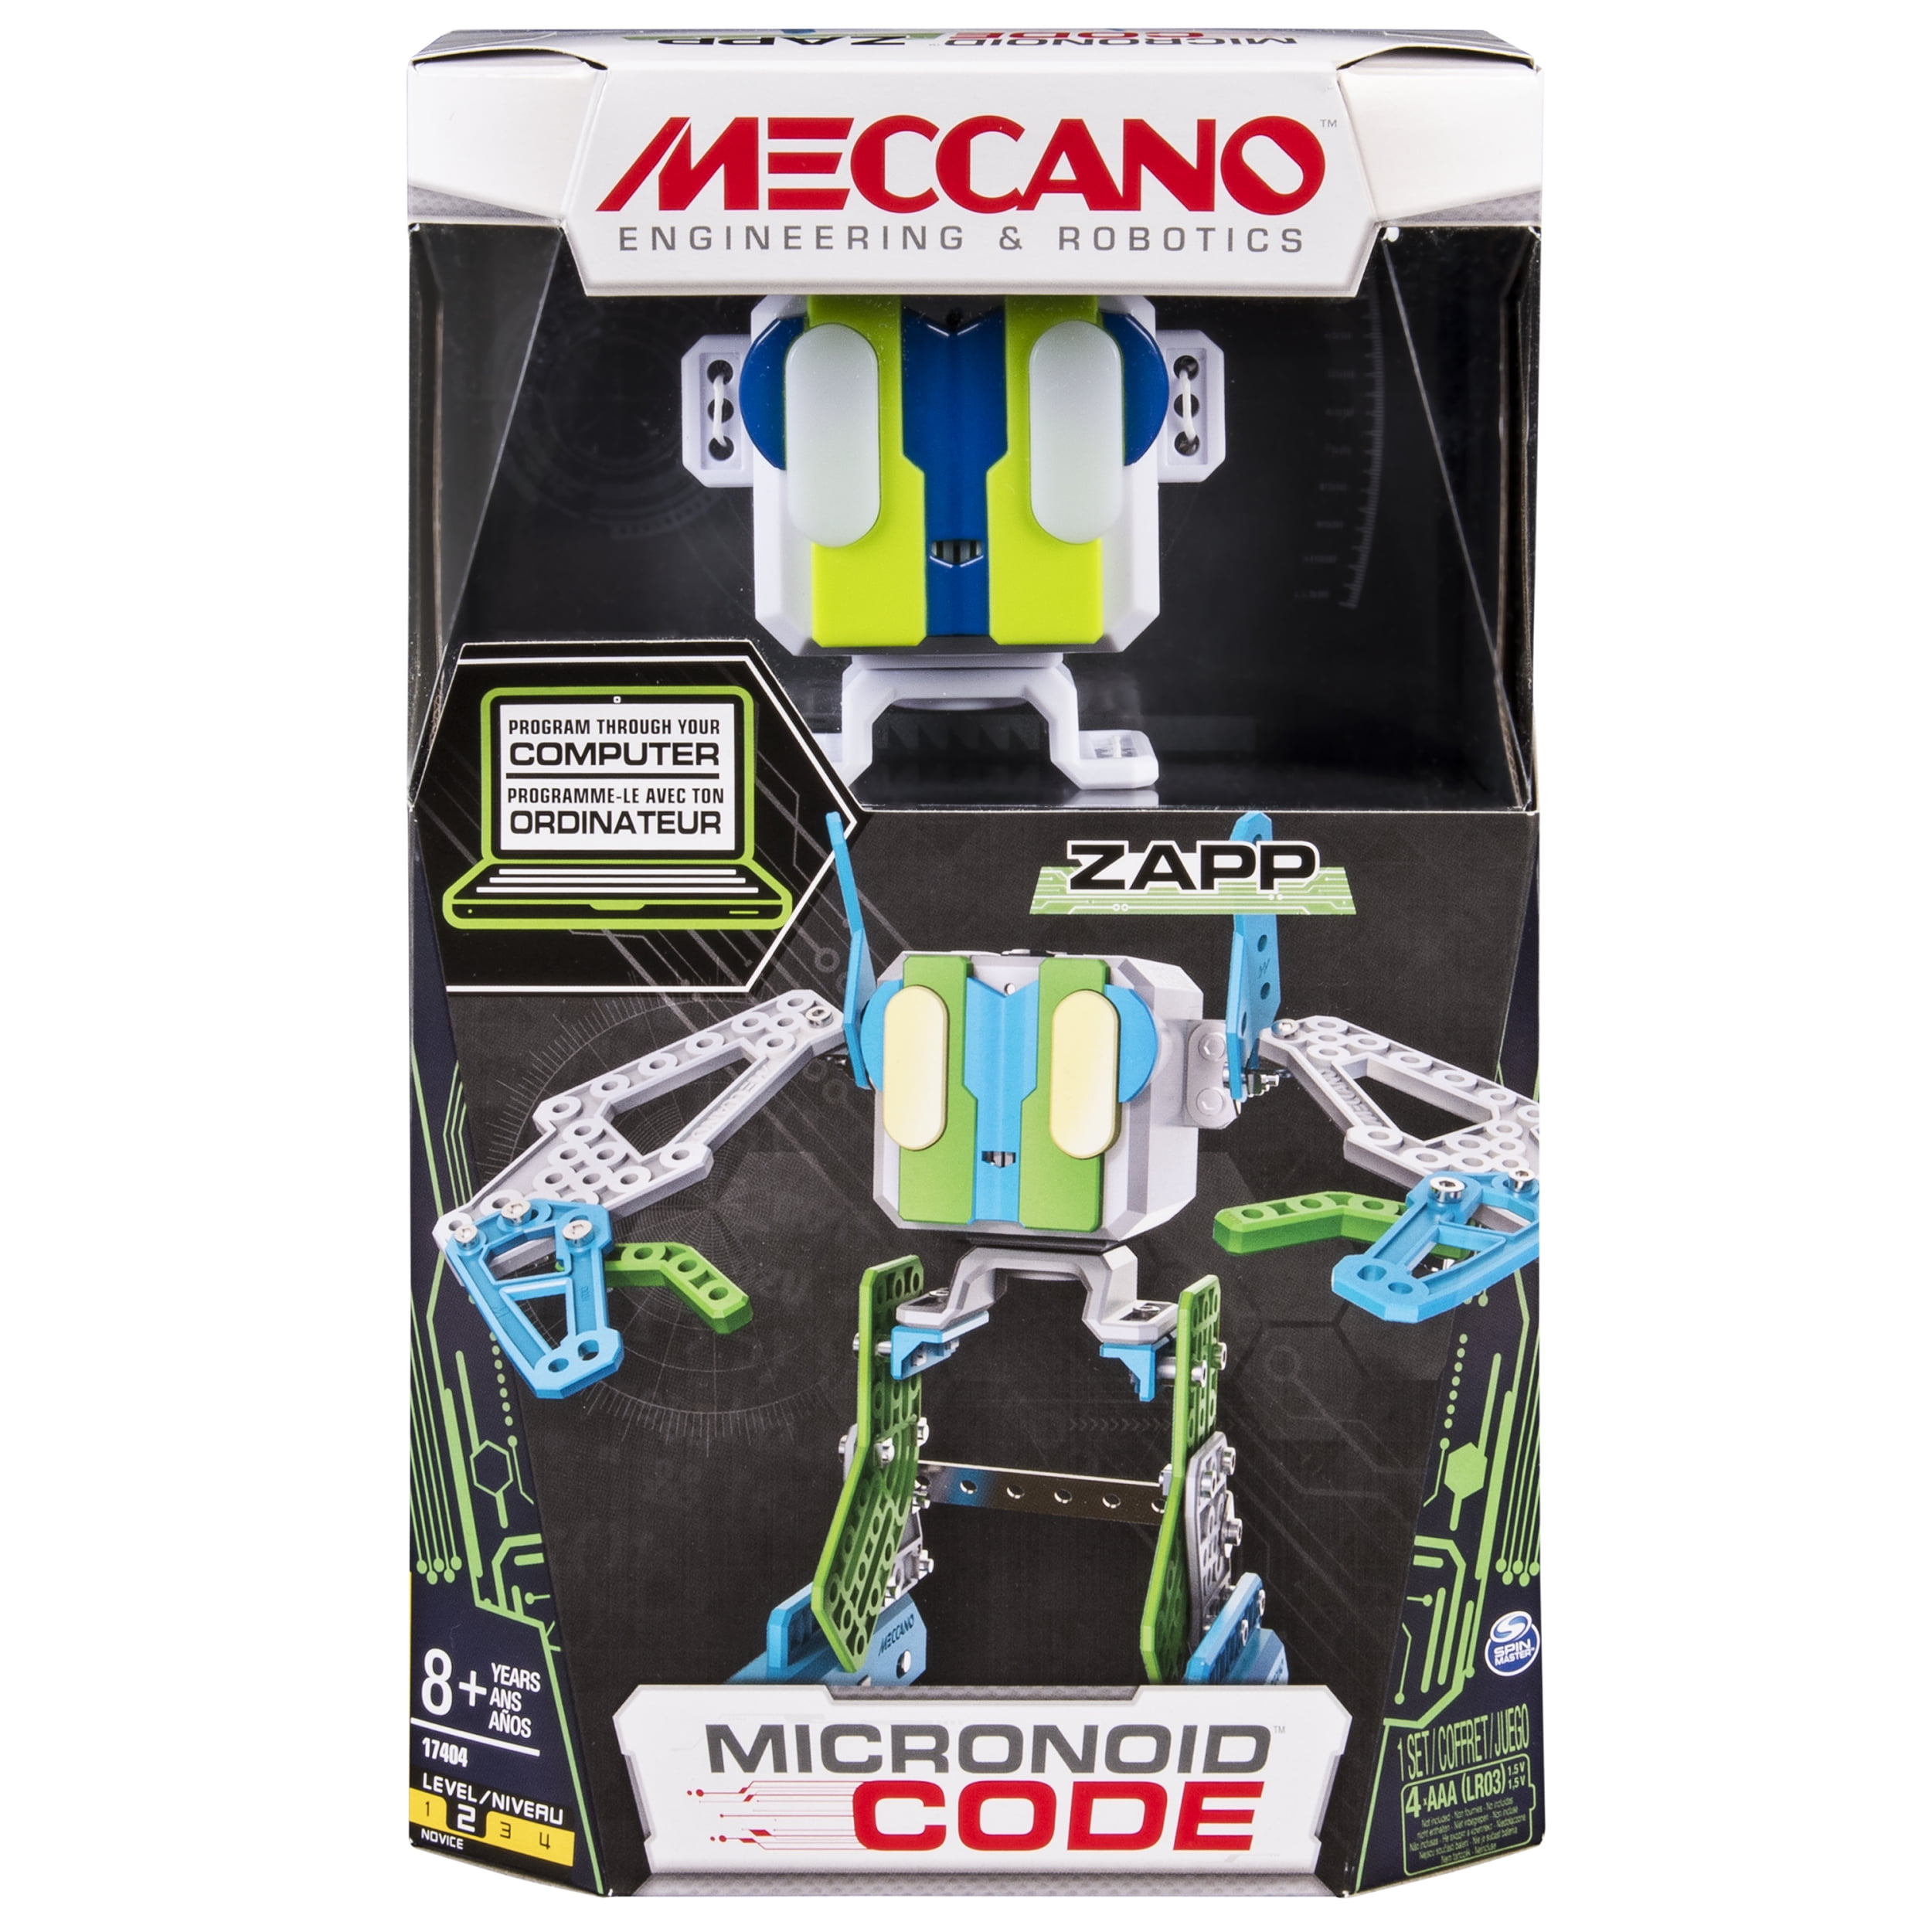 mangfoldighed Uensartet jeg læser en bog Meccano by Erector, Micronoid Code Zapp Programmable Robot Building Kit -  Walmart.com